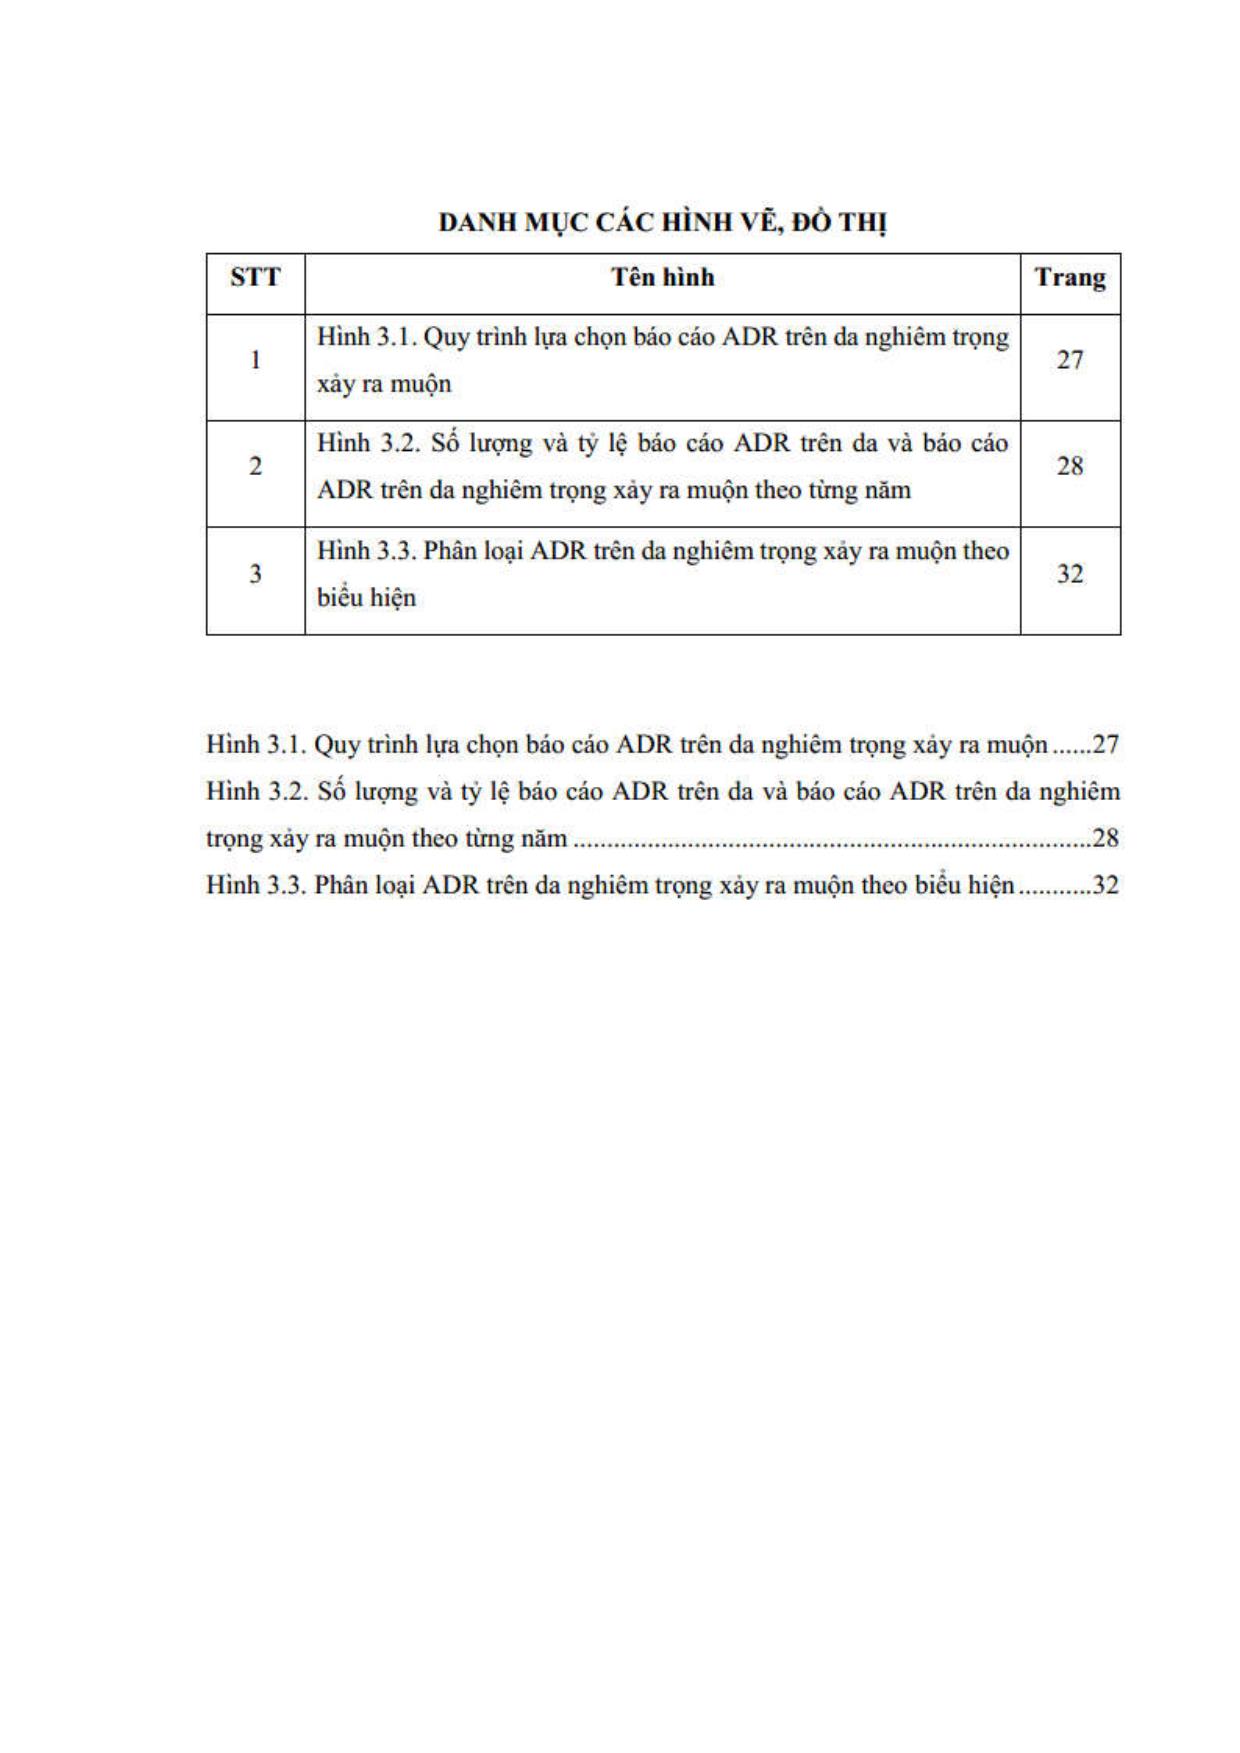 Phân tích phản ứng trên da nghiêm trọng ghi nhận từ cơ sở dữ liệu Báo cáo ADR tại Việt Nam giai đoạn 2013 - 2015 trang 8